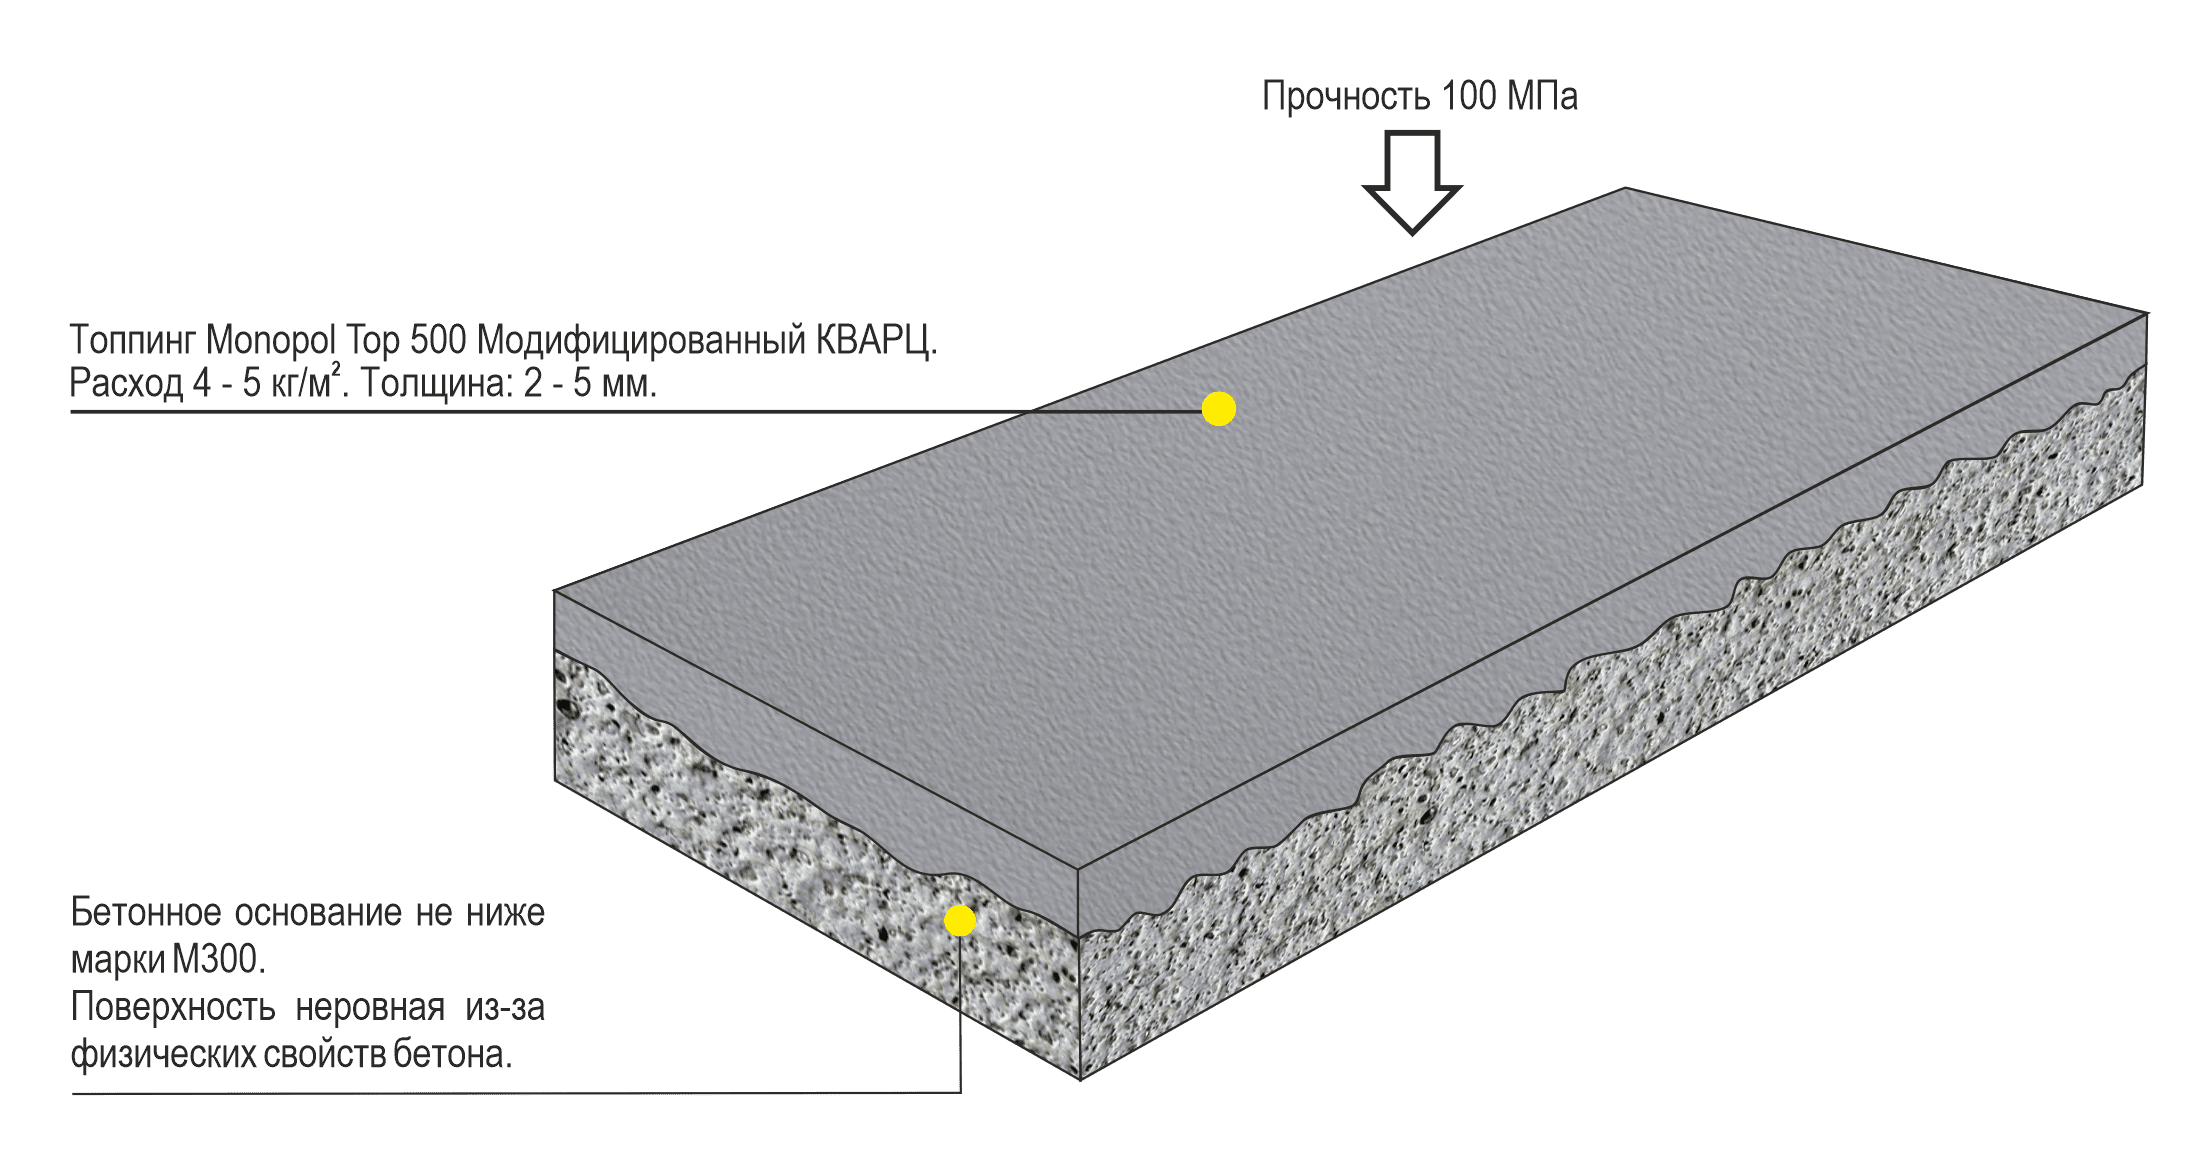 Бетонные полы с топпингом - эффективная система упрочнения бетона